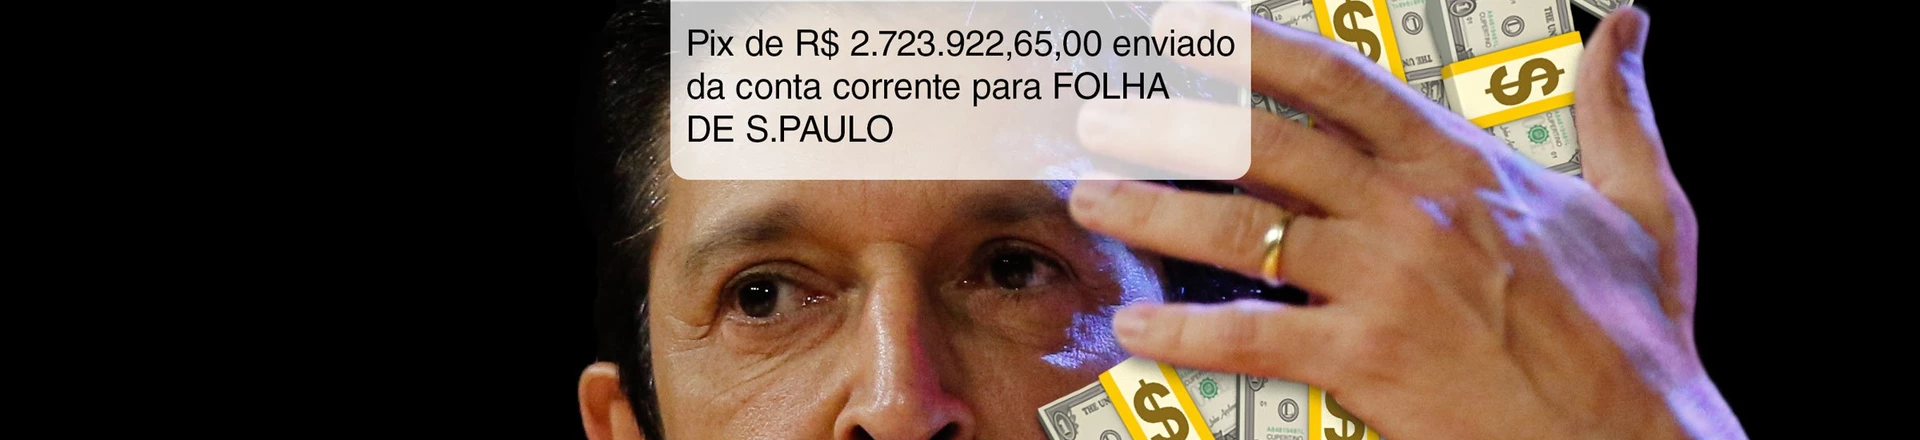 Ricardo Nunes já gastou quase R$ 3 milhões com propagandas disfarçadas de jornalismo na Folha